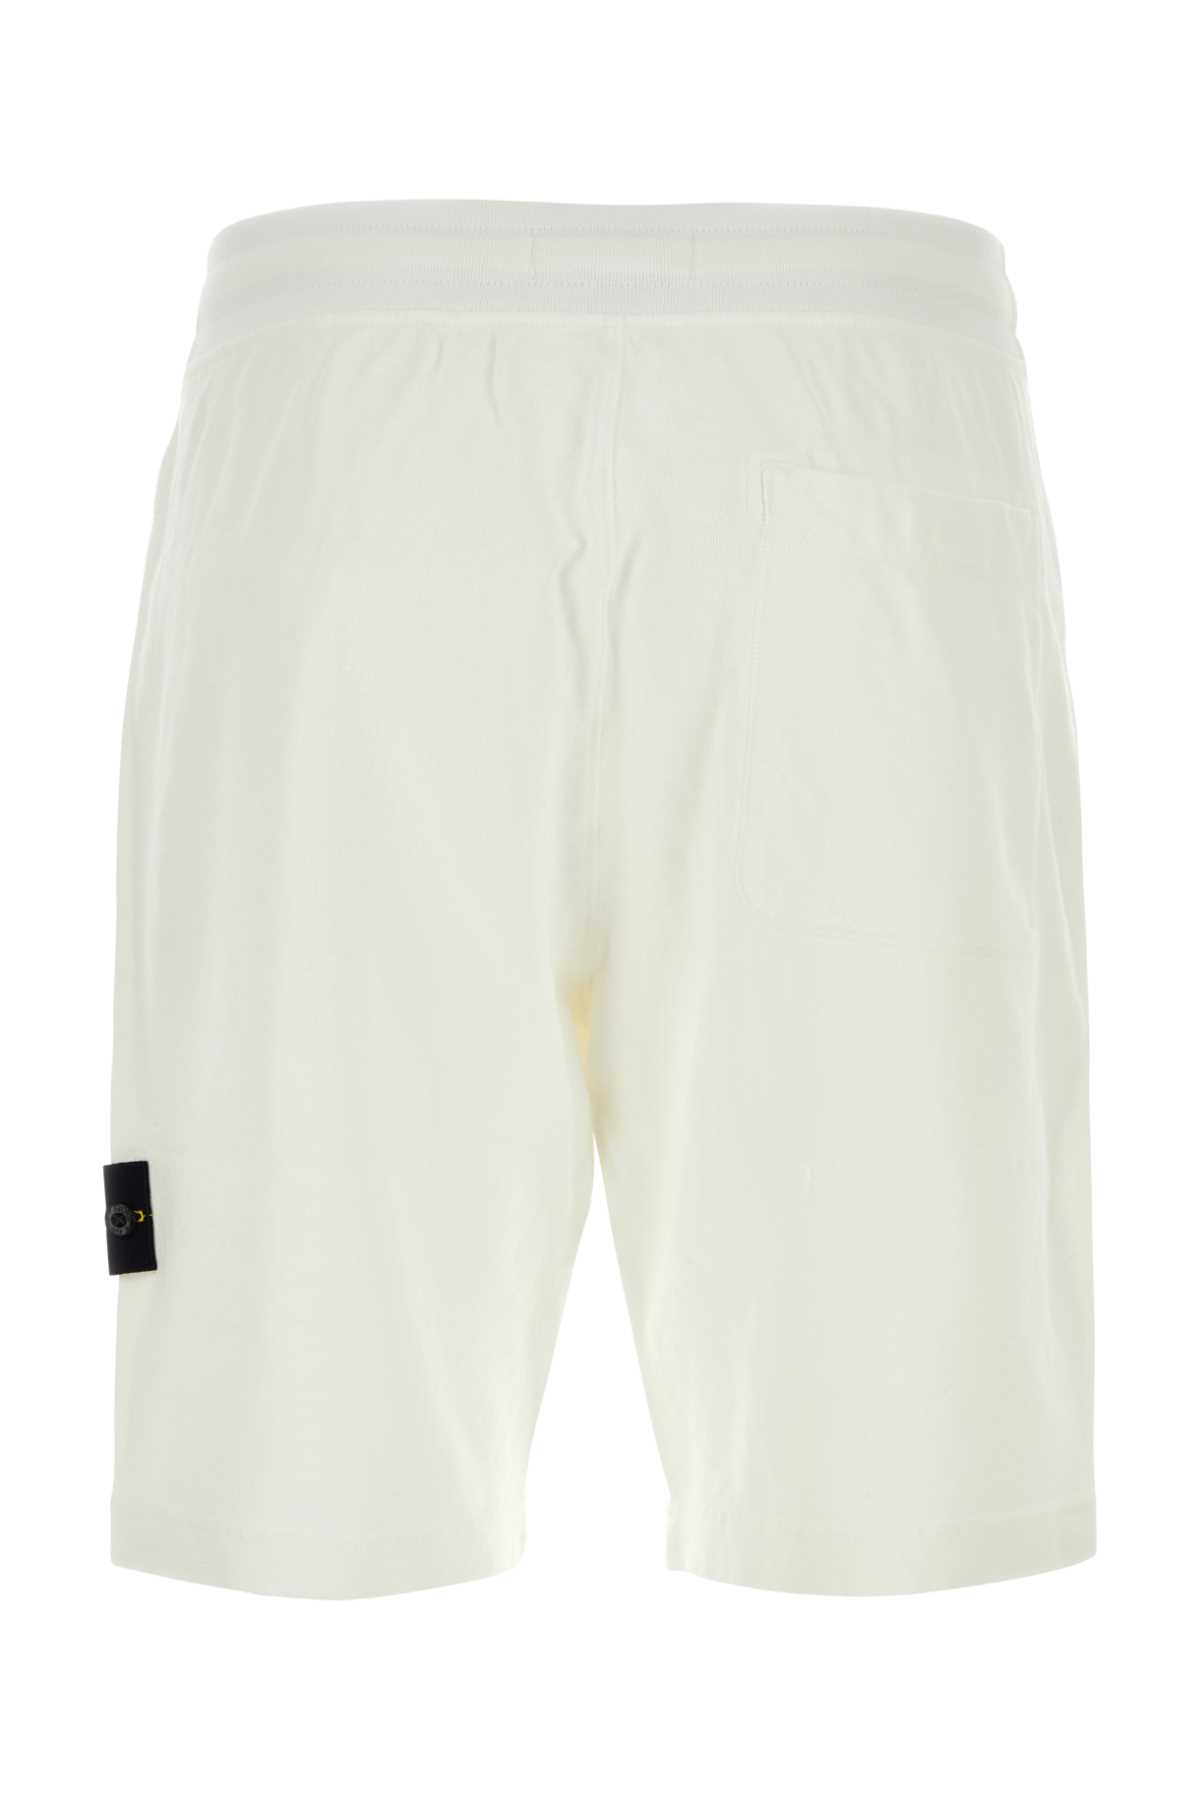 Stone Island White Cotton Bermuda Shorts In Wht